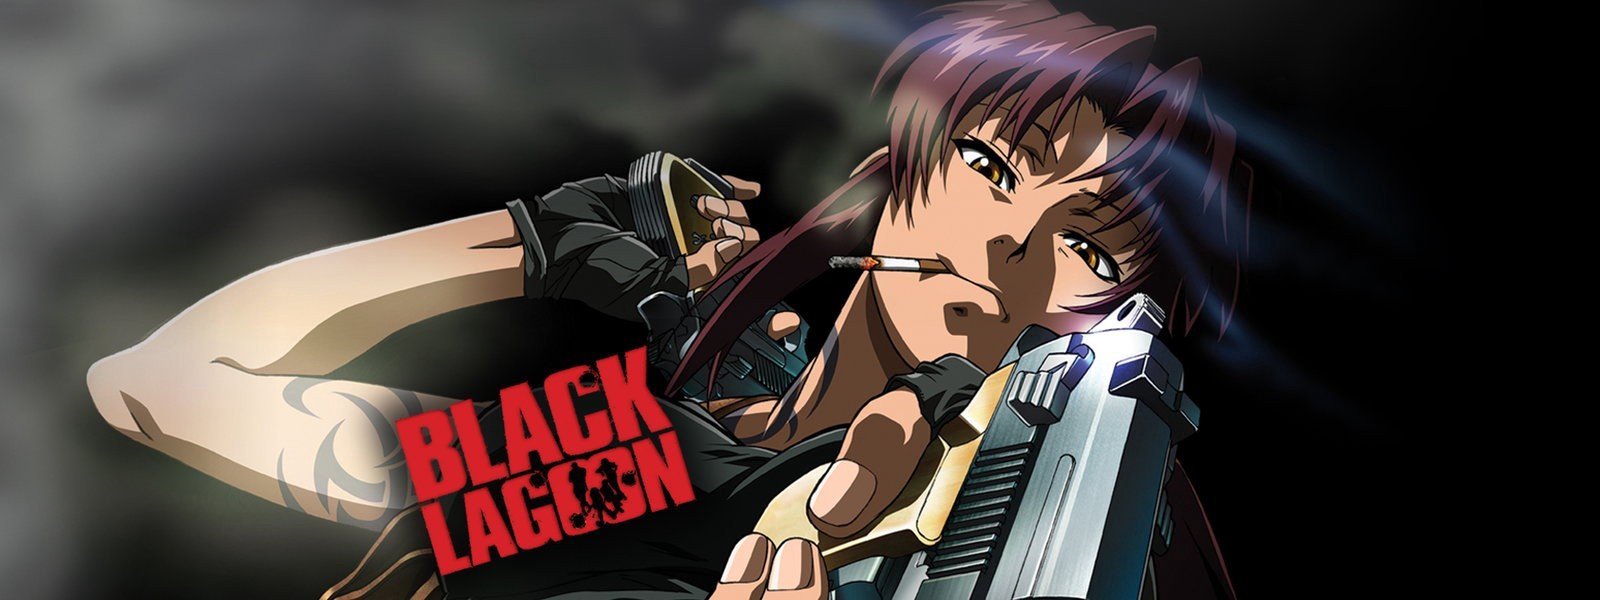 Black Lagoon - Adult anime series